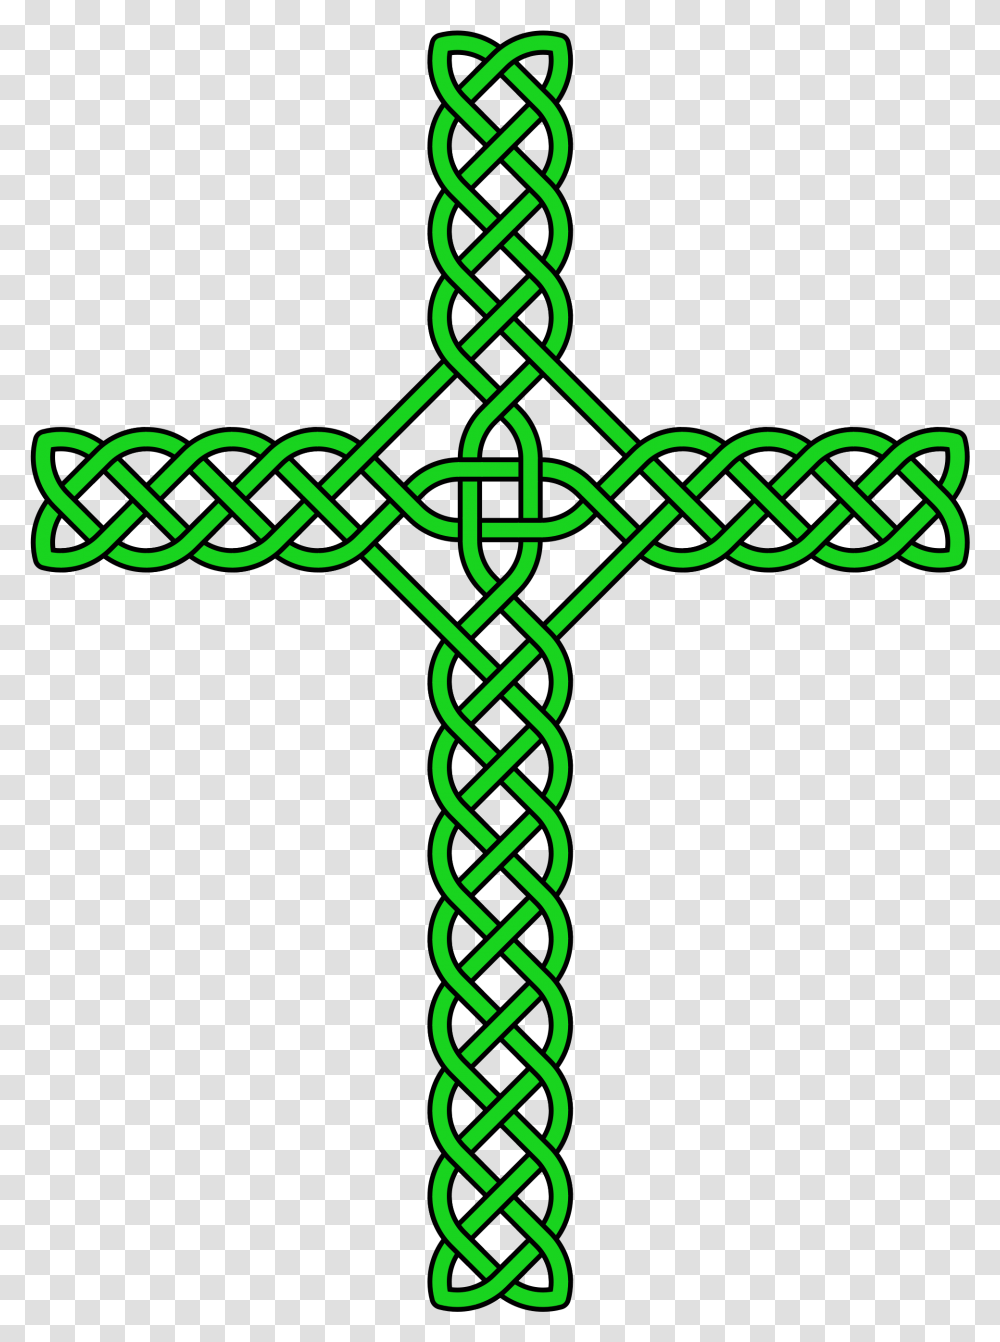 Welsh Celtic Cross Knotwork Transparent Png